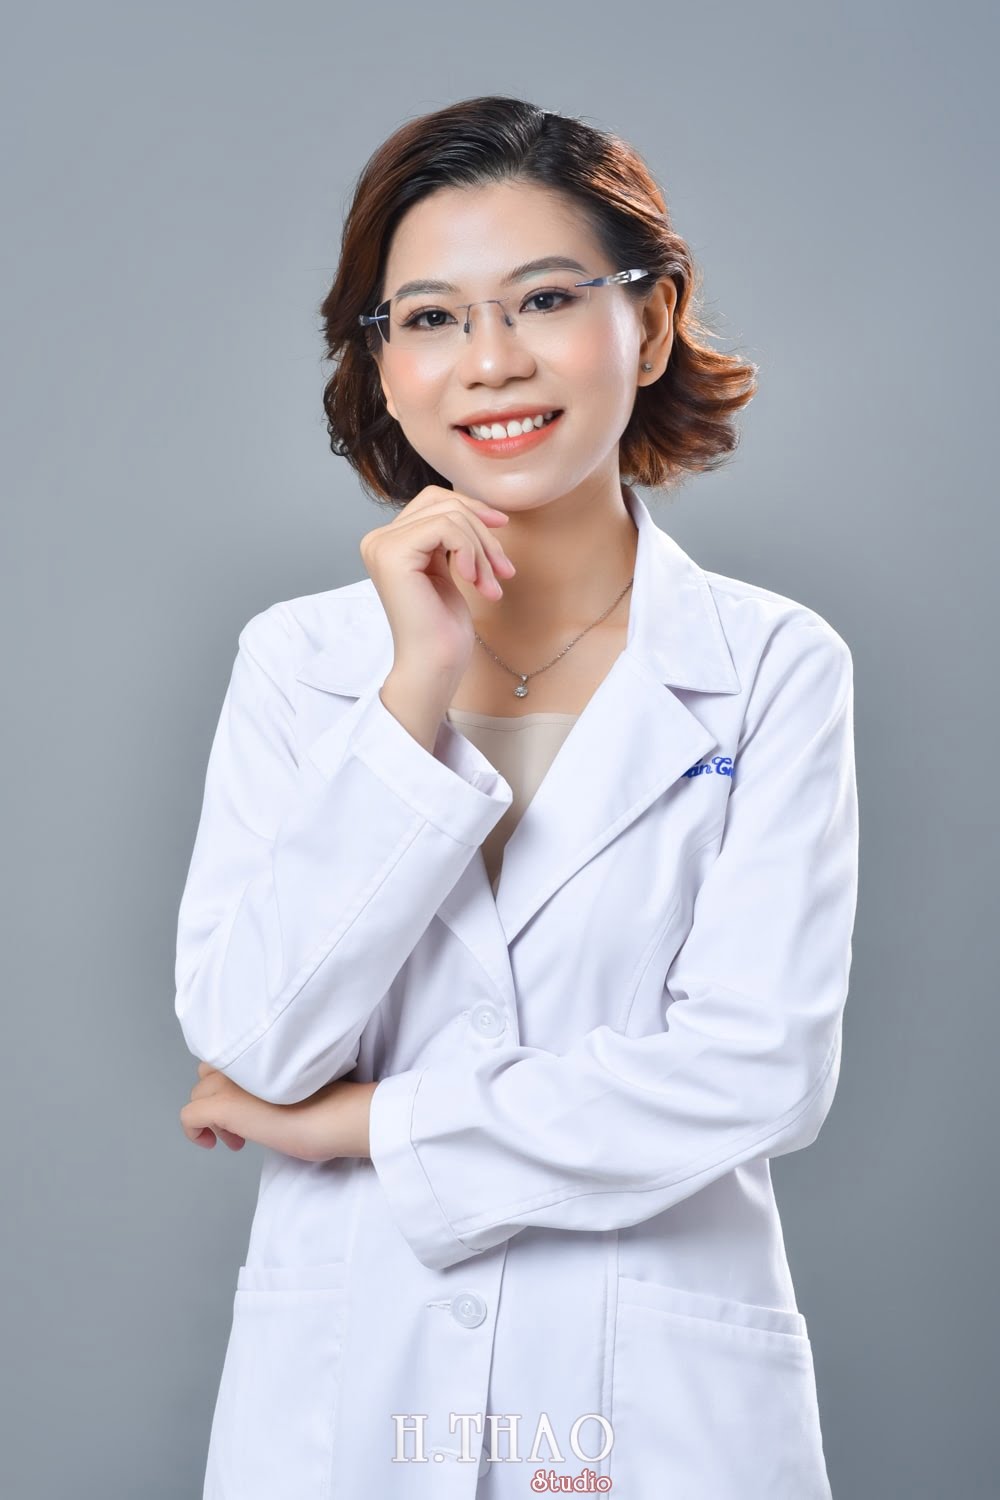 Anh profile  16 min - Tổng hợp ảnh profile nghề nghiệp bác sĩ, ngân hàng đẹp- HThao Studio